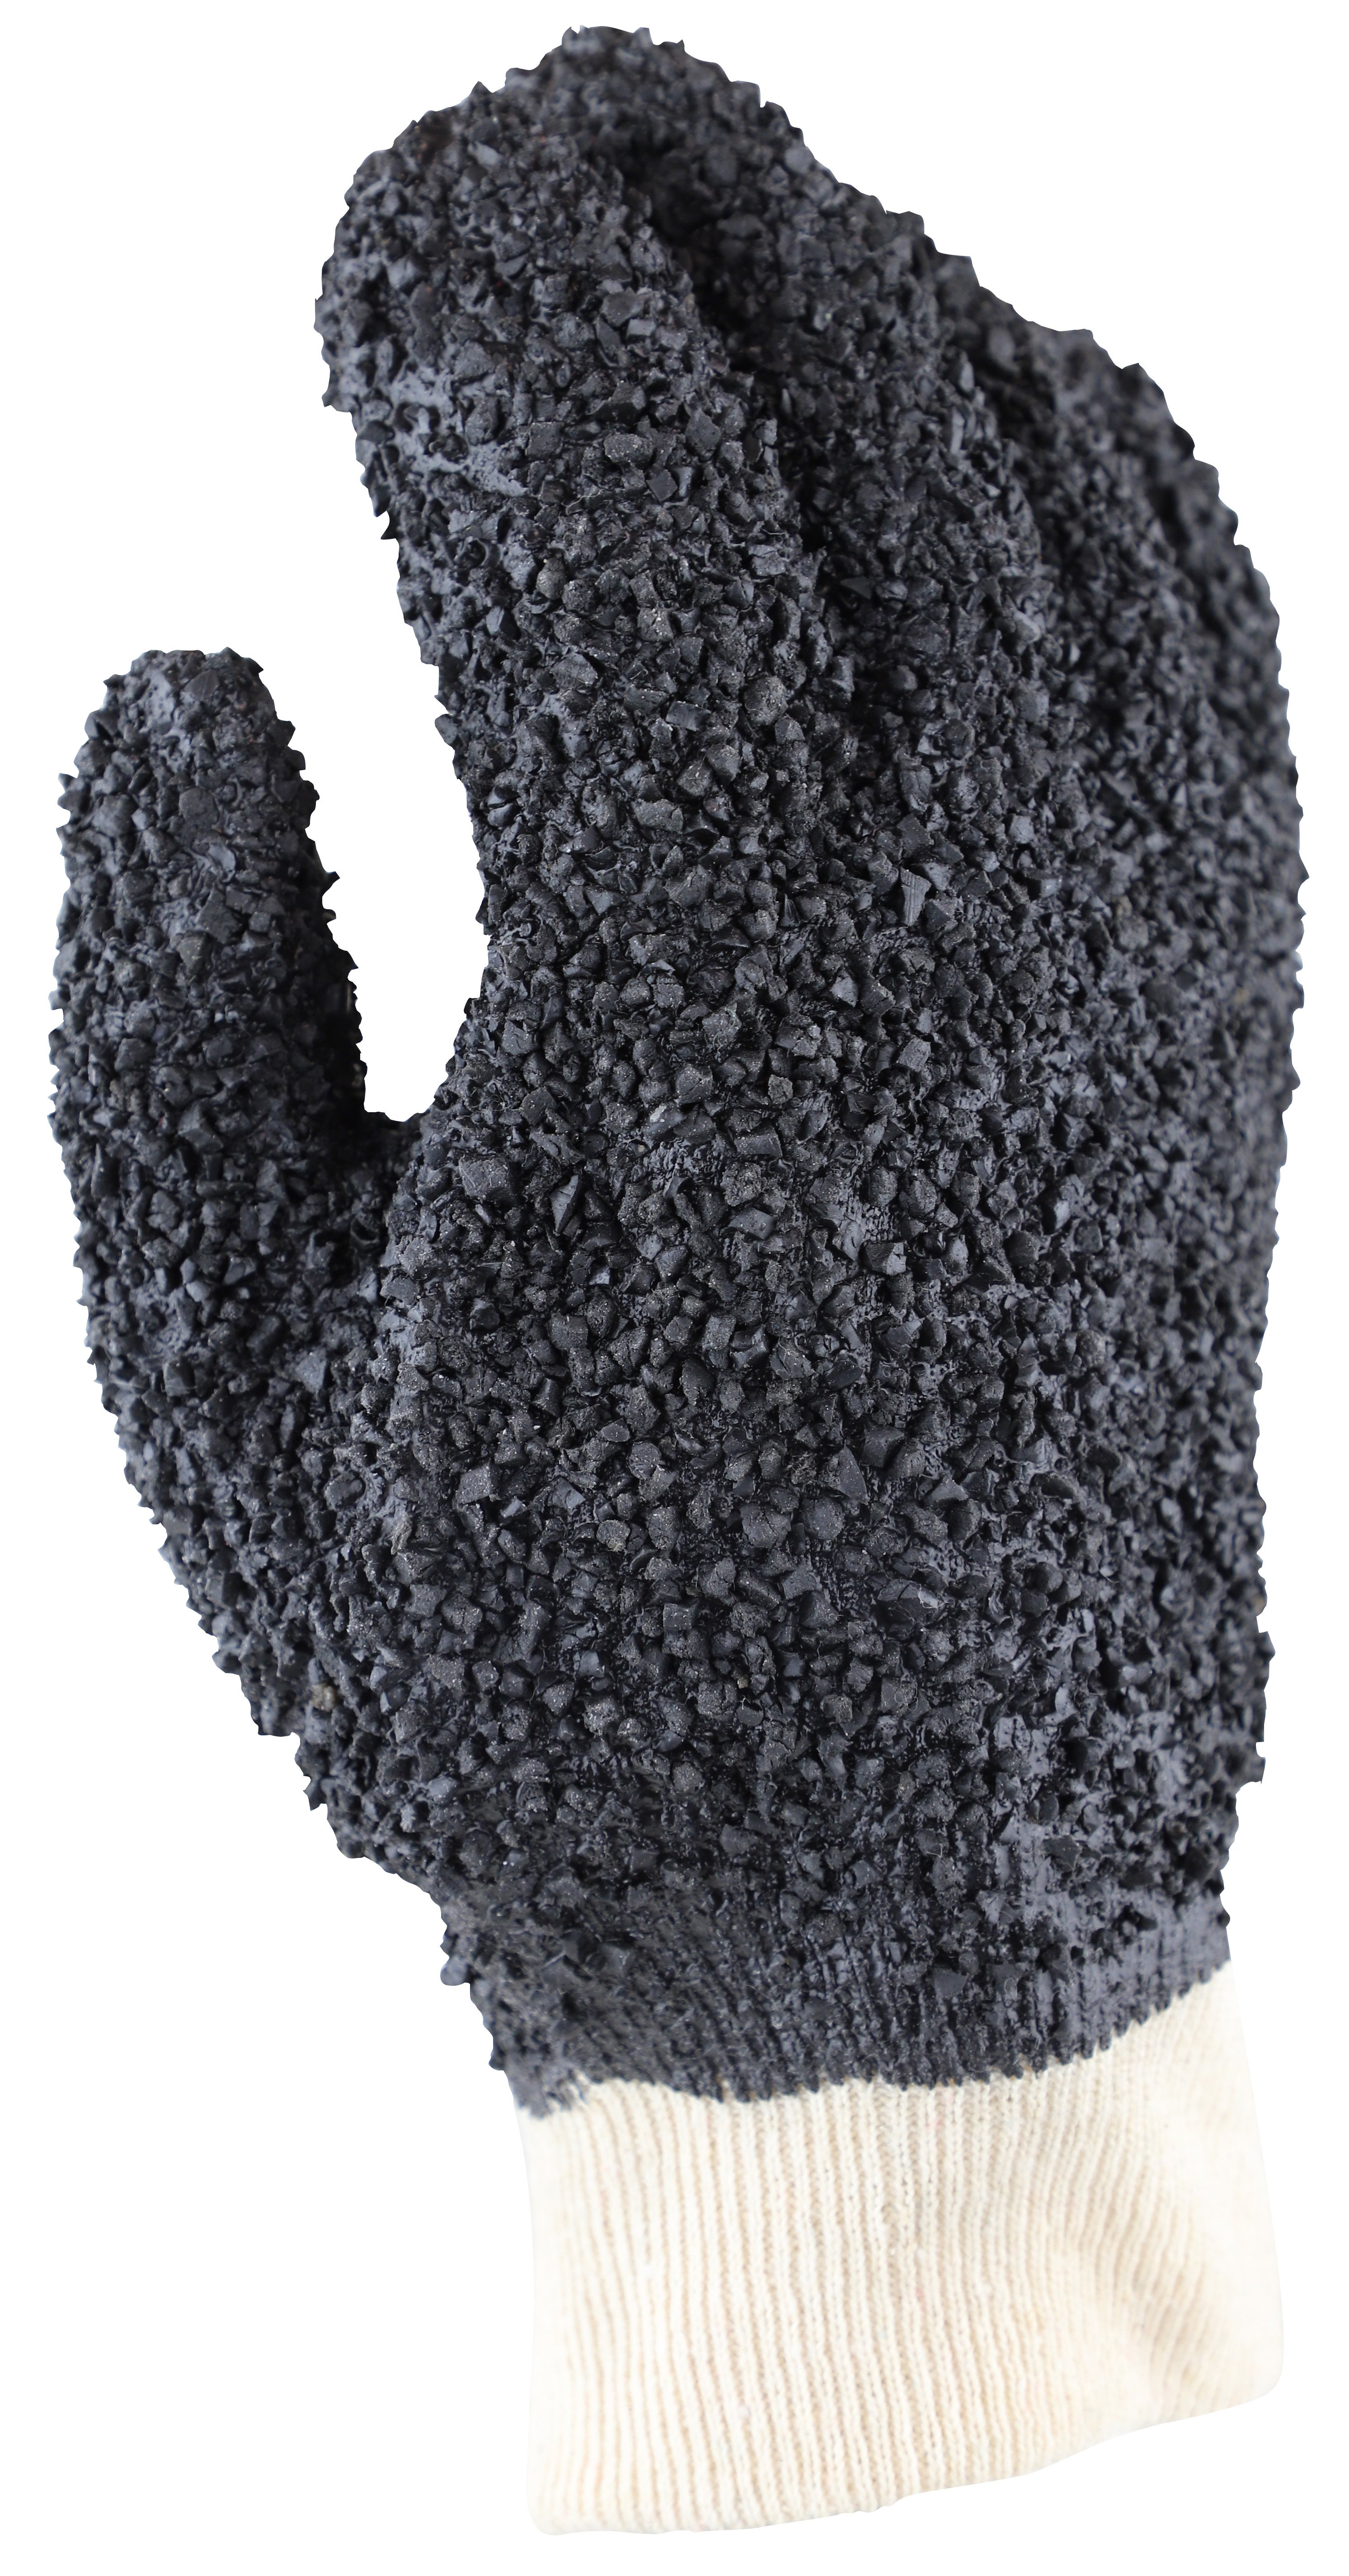 'Grizzly' Black PVC Debudding Glove